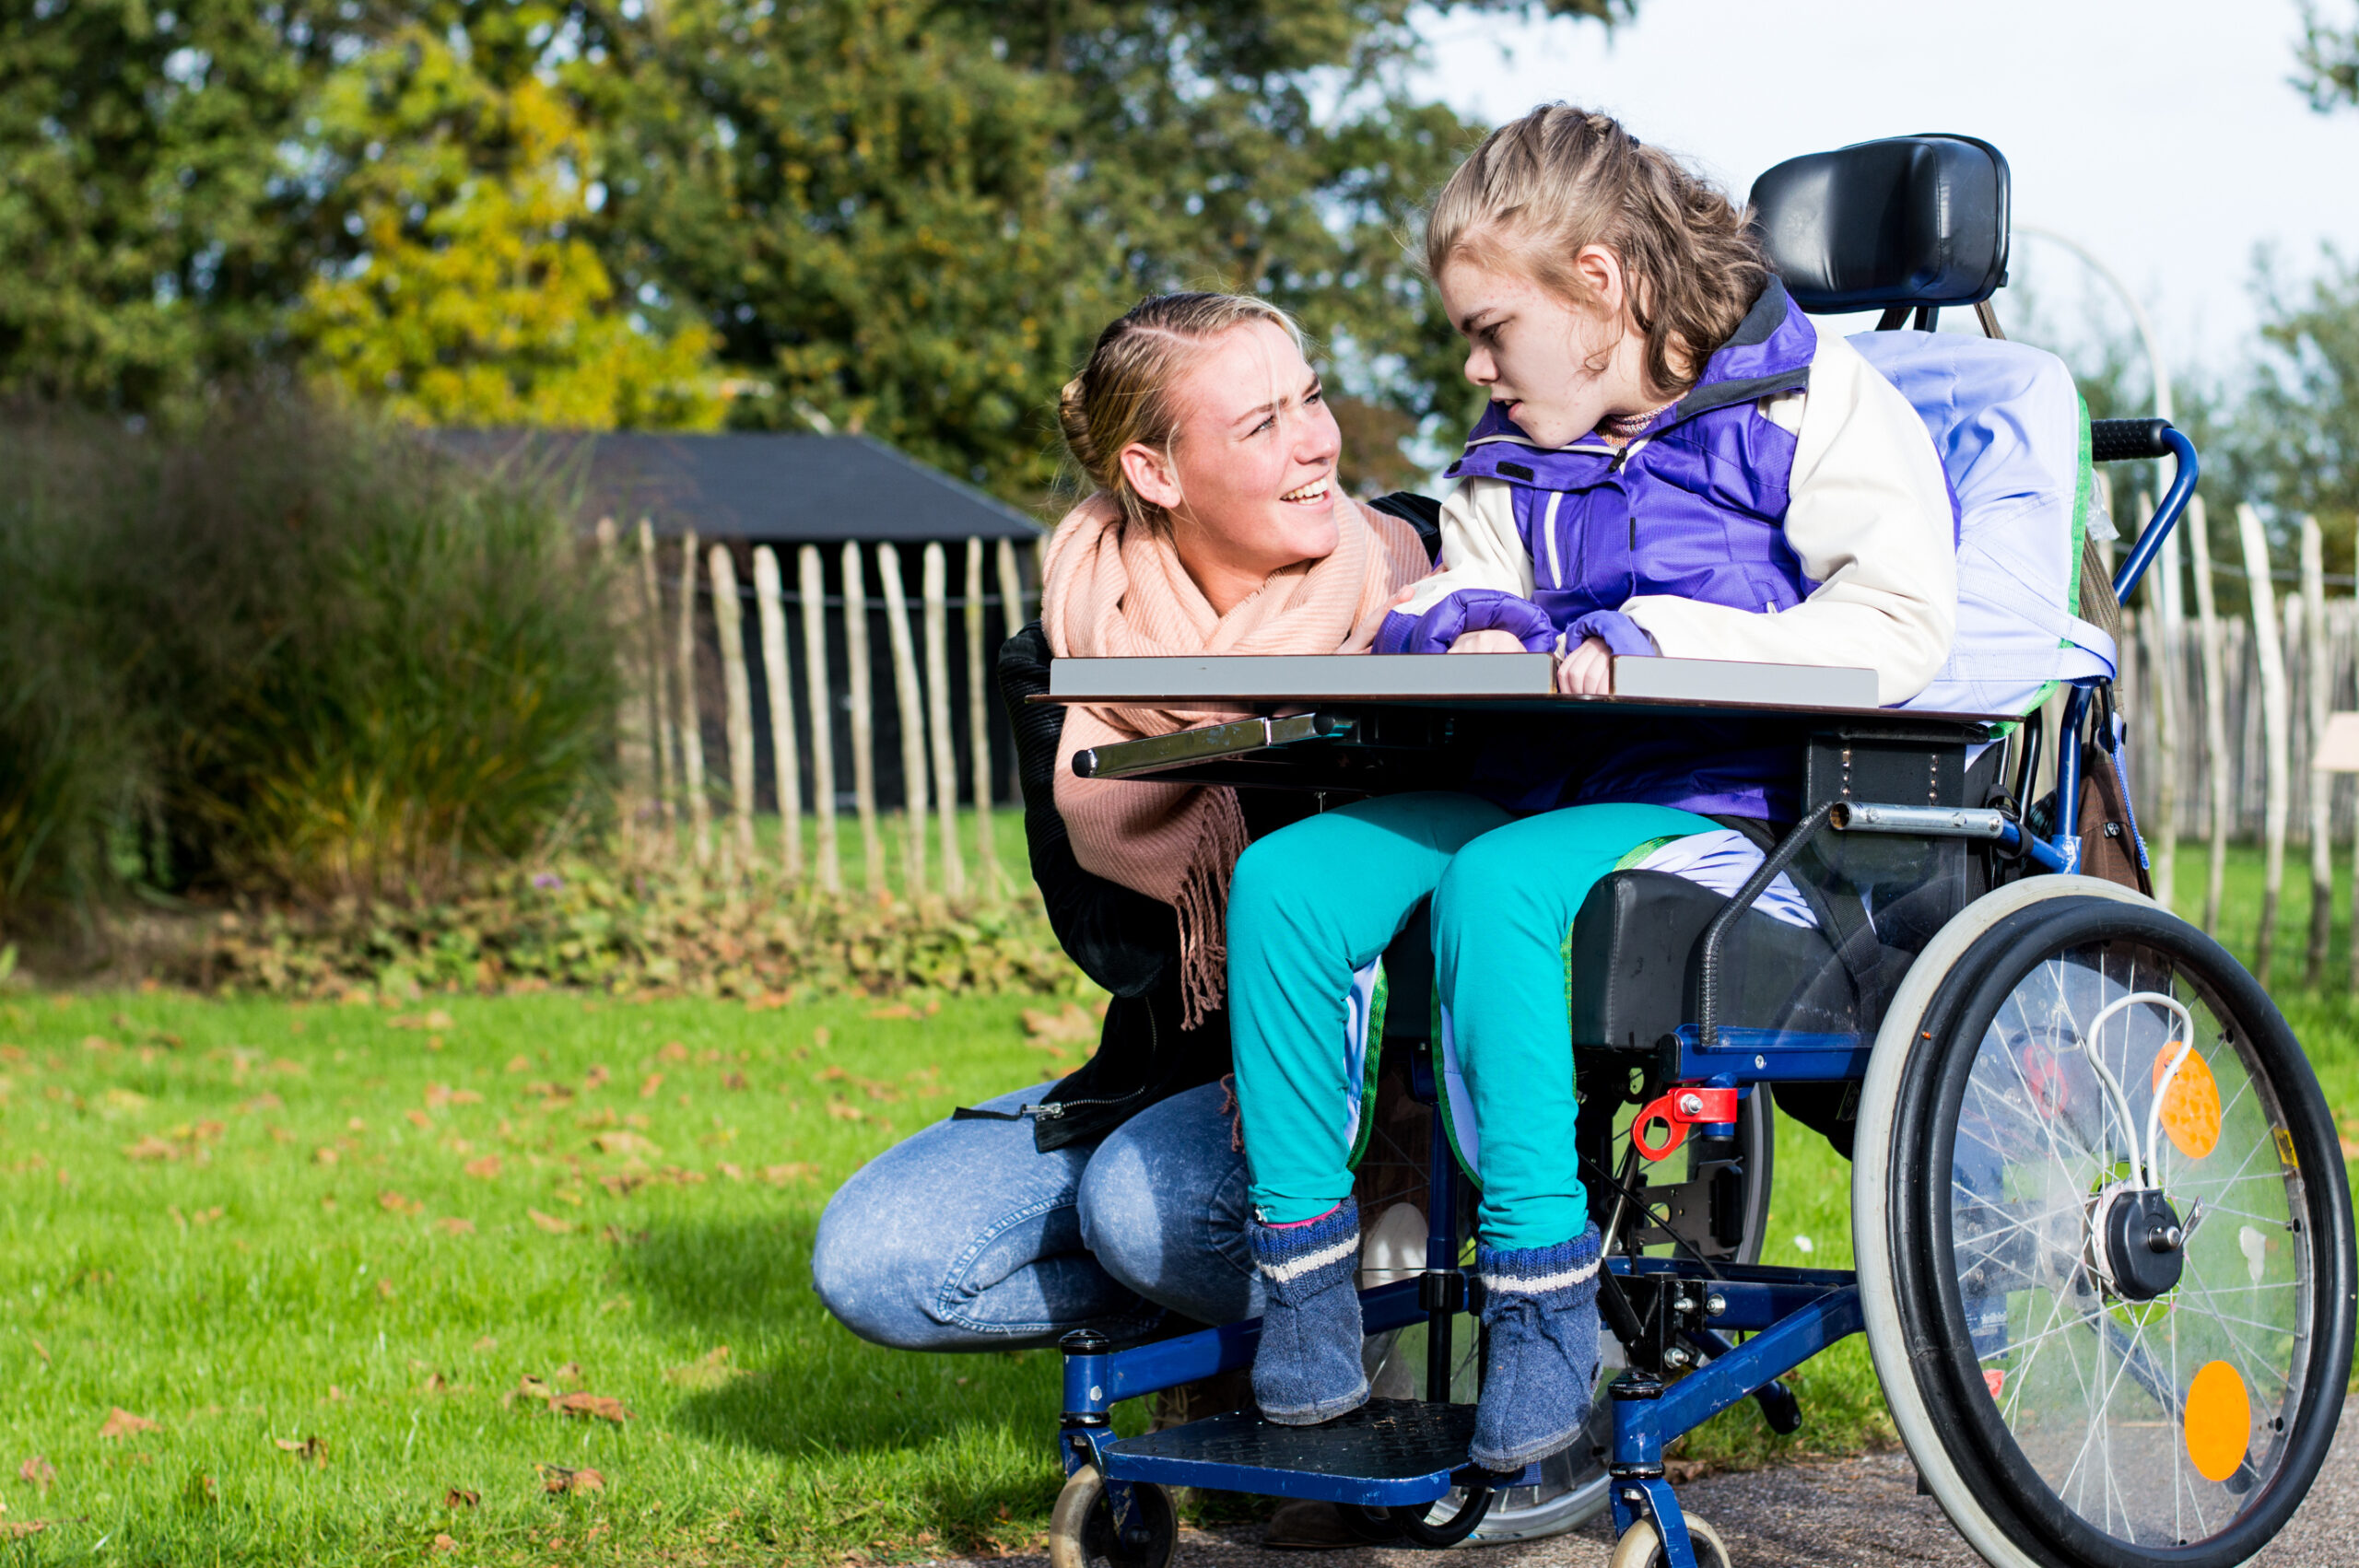 Heilerziehungspfleger:innen begleiten Kinder, Jugendliche und erwachsene Menschen mit Behinderungen Ziel ist, dass Klient:innen am gesellschaftlichen Leben teilhaben können. Foto: Adobe Stock/Mjowra